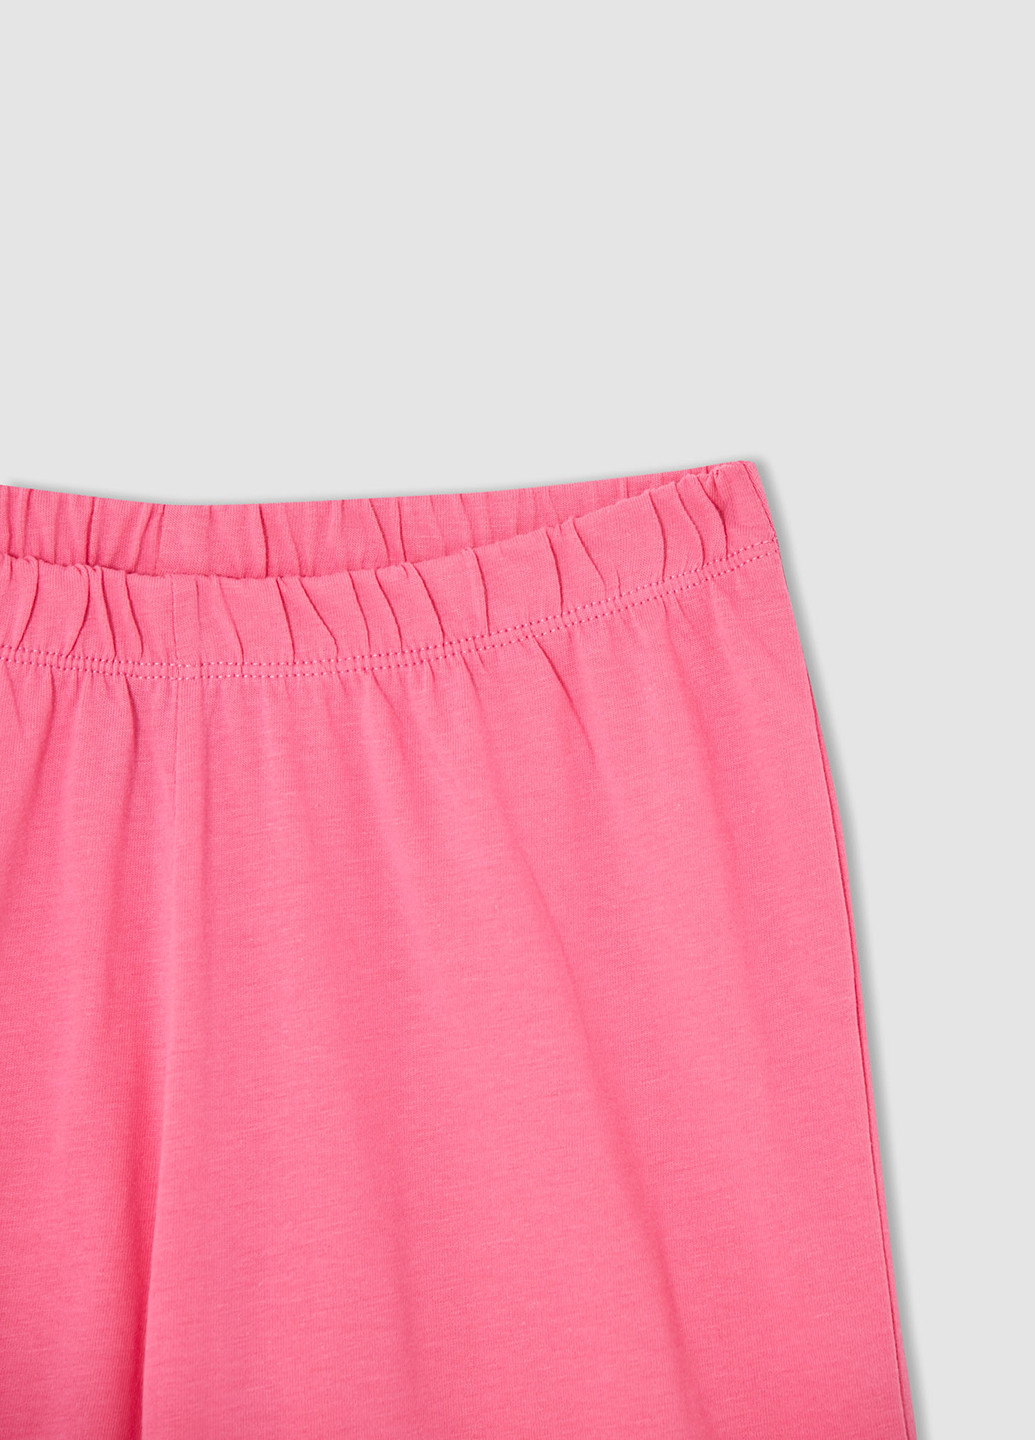 Розовая всесезон пижама (футболка, шорты) футболка + шорты DeFacto